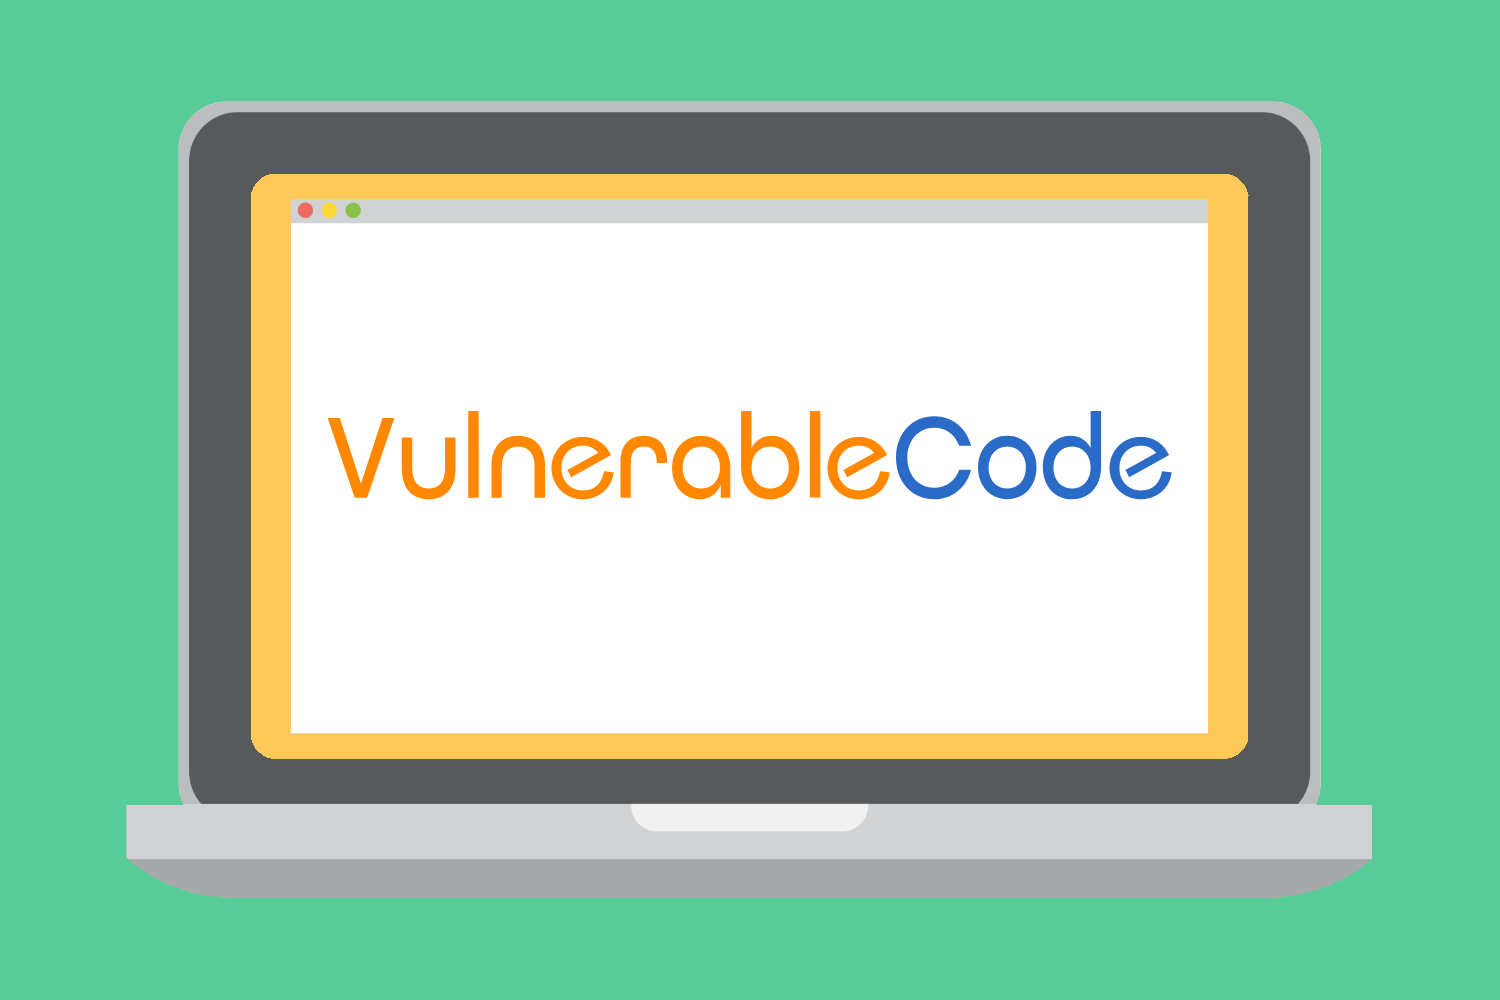 VulnerableCode